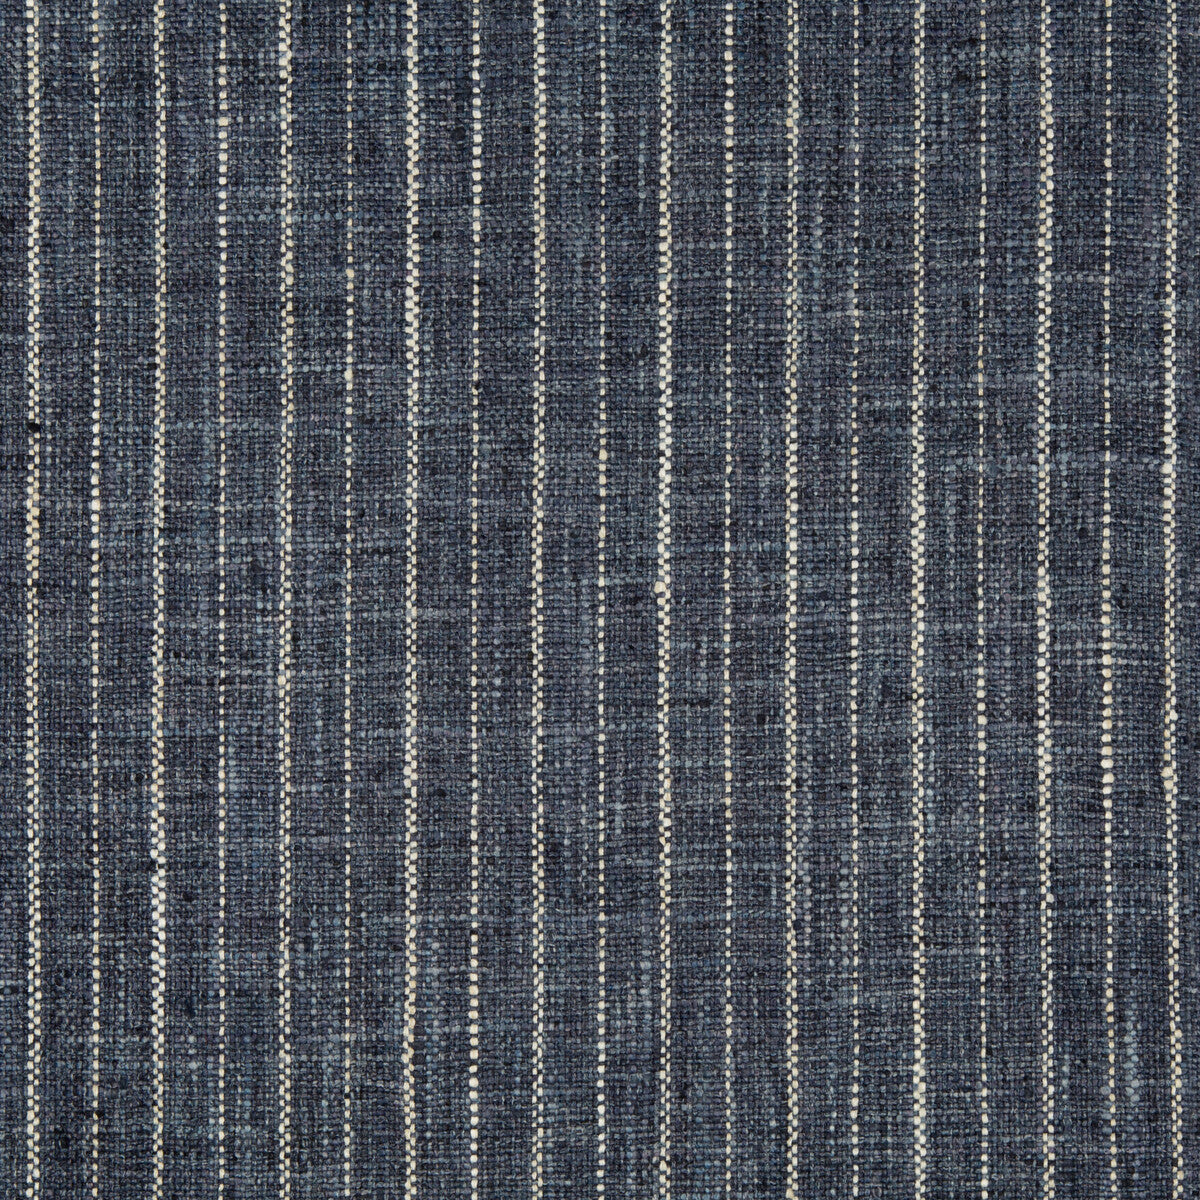 Kravet Basics fabric in 34984-50 color - pattern 34984.50.0 - by Kravet Basics